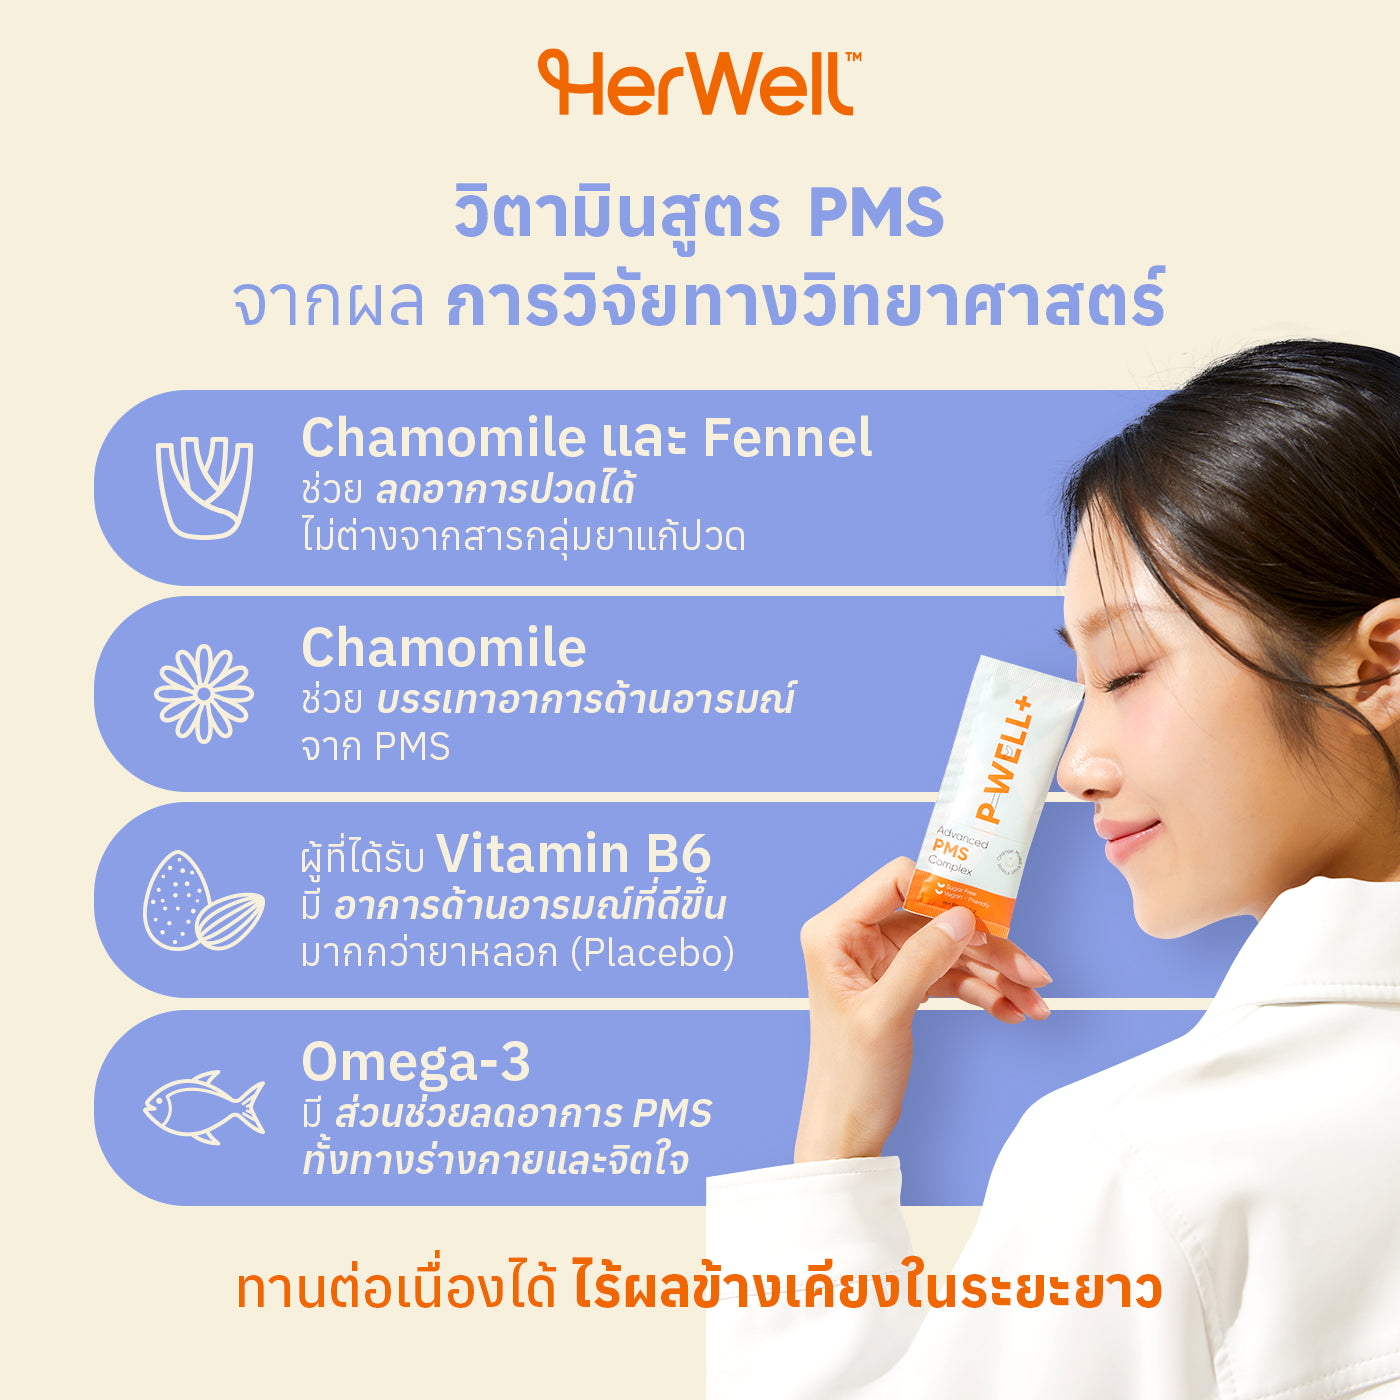 P-WELL+ จากแบรนด์ HerWell Thailand วิตามินสูตร PMS จากผลการวิจัยทางวิทยาศาสตร์